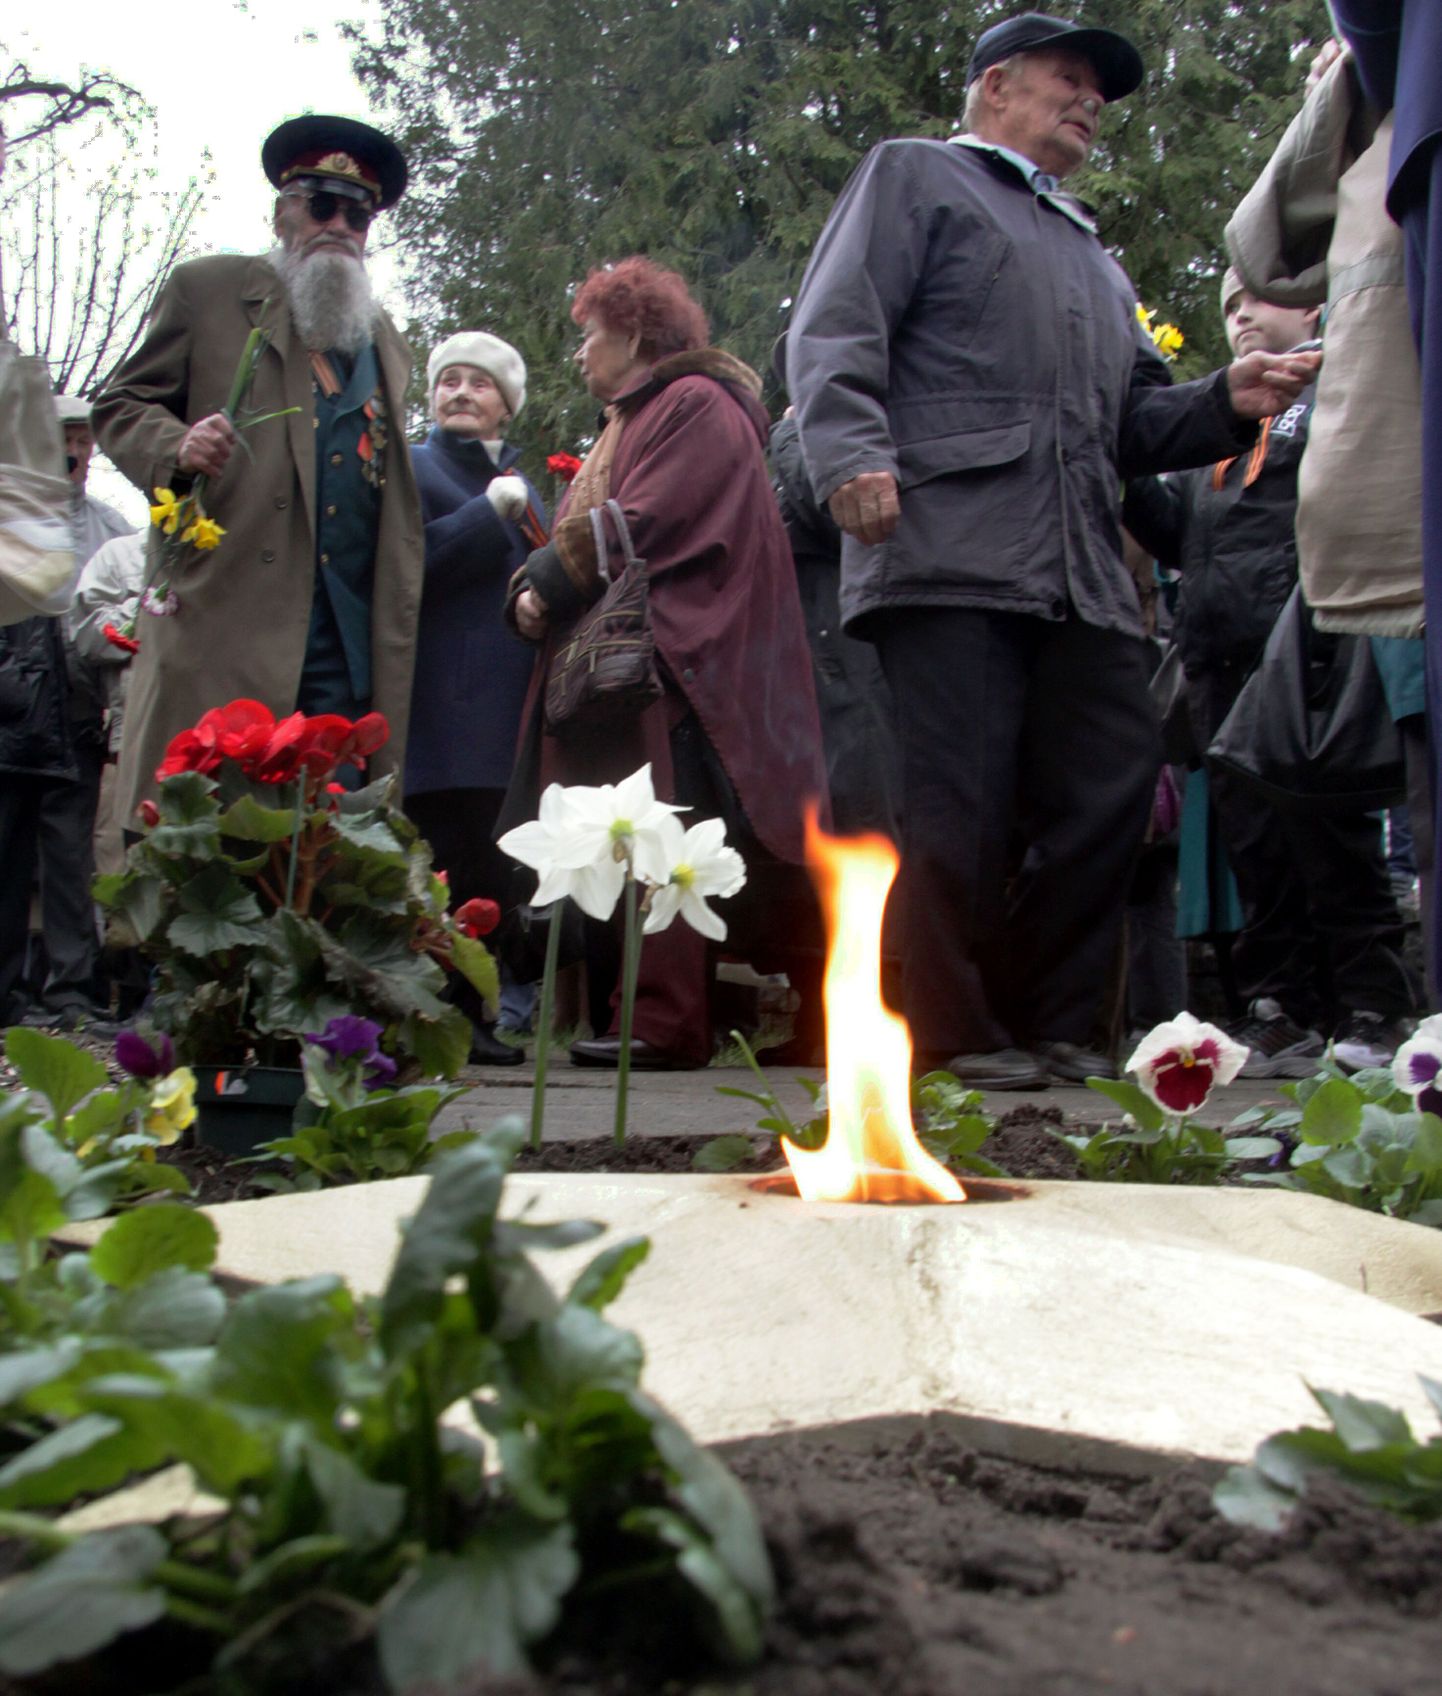 Pärnus tähistas Suure Isamaasõja lõppemise 65. aastapäeva sadakond inimest, kes kahele Alevi kamistule nelke, nartsisse ja tulpe viisid. Alevi kalmistu mälestusmärgi juures süüdati tähtpäeva puhul "igavene tuli".